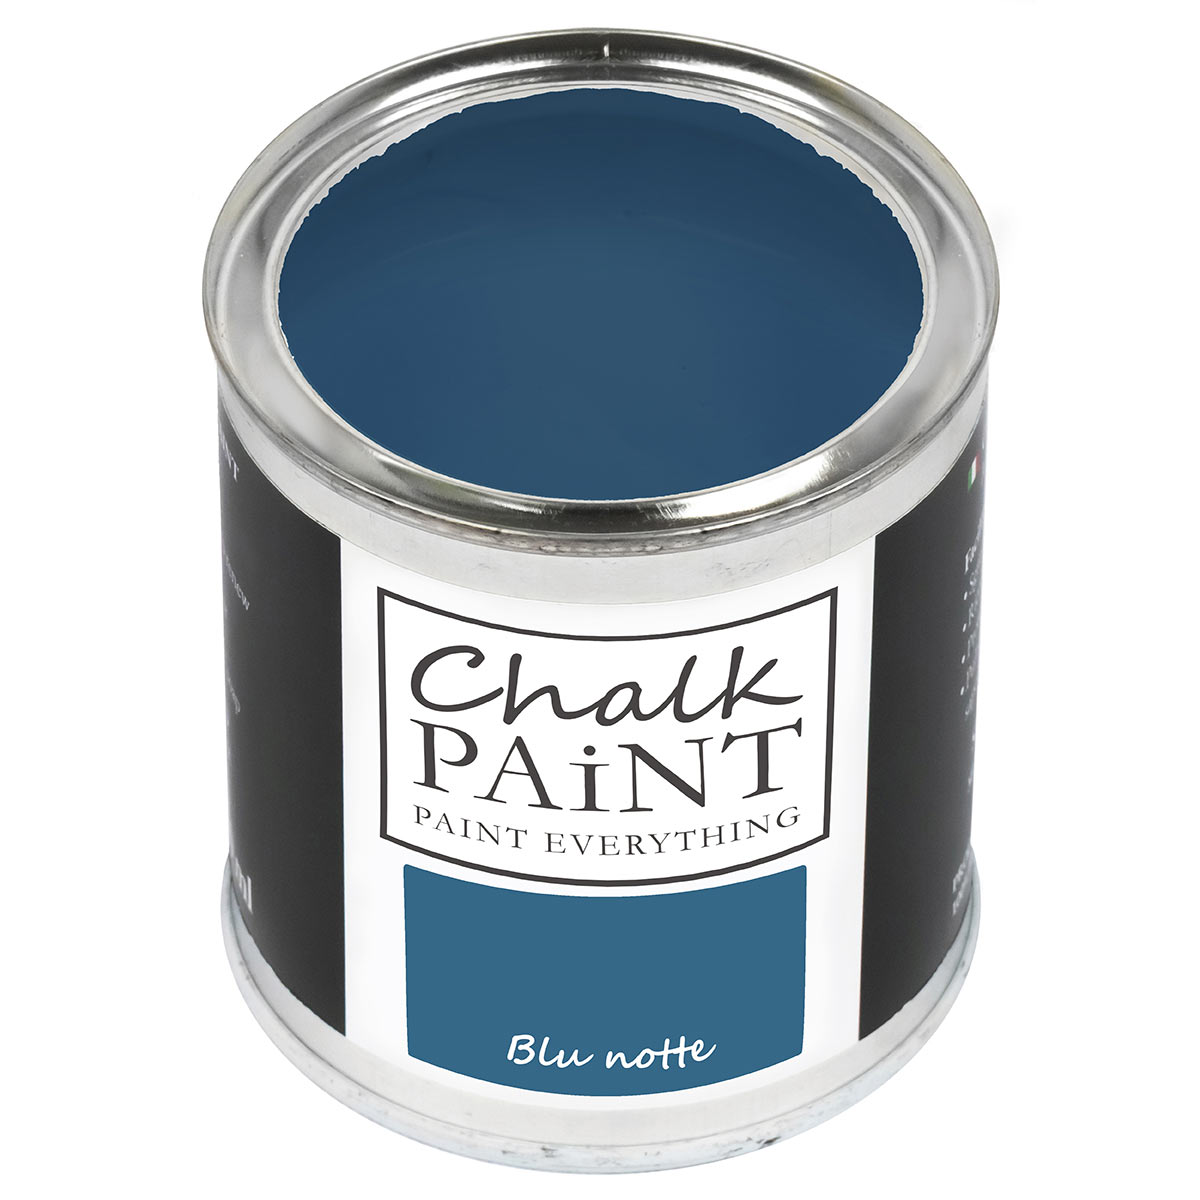 Chalk paint Blu notte